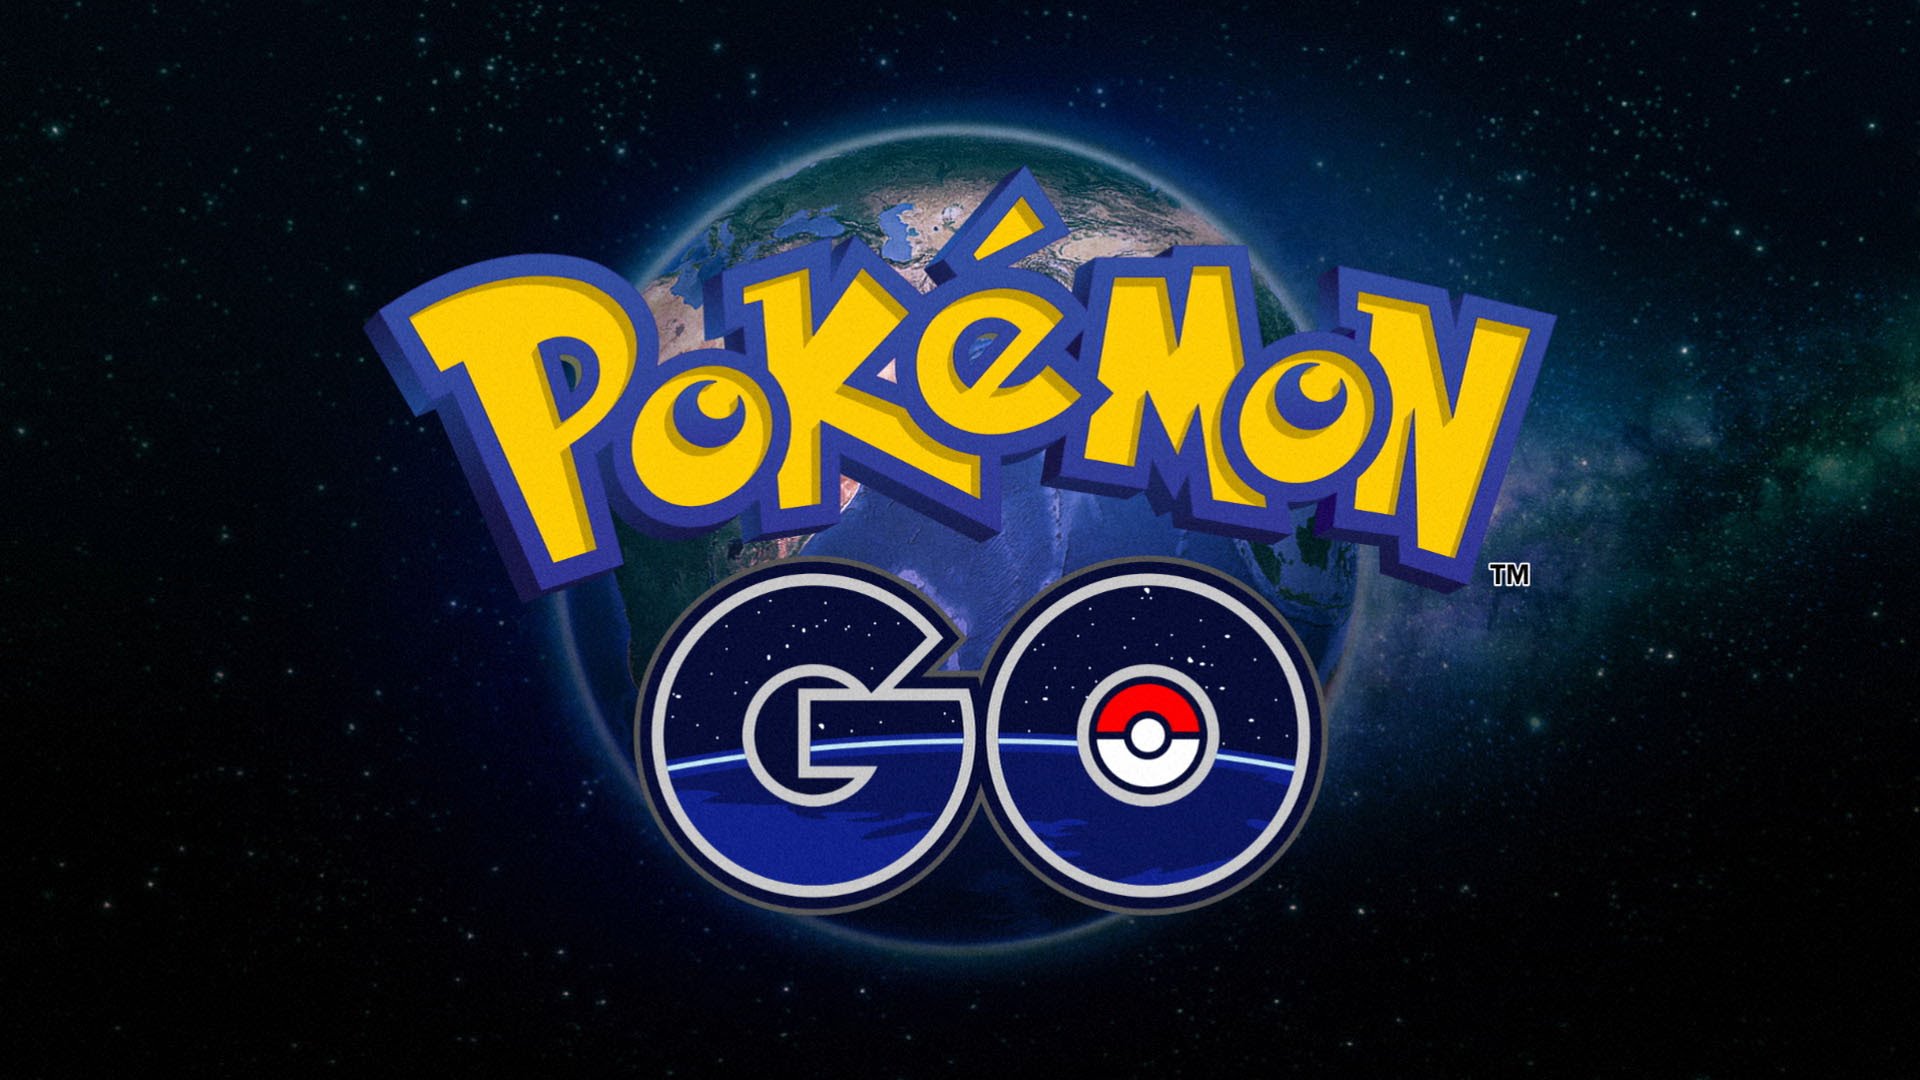 Pokémon Go: How to Get Started